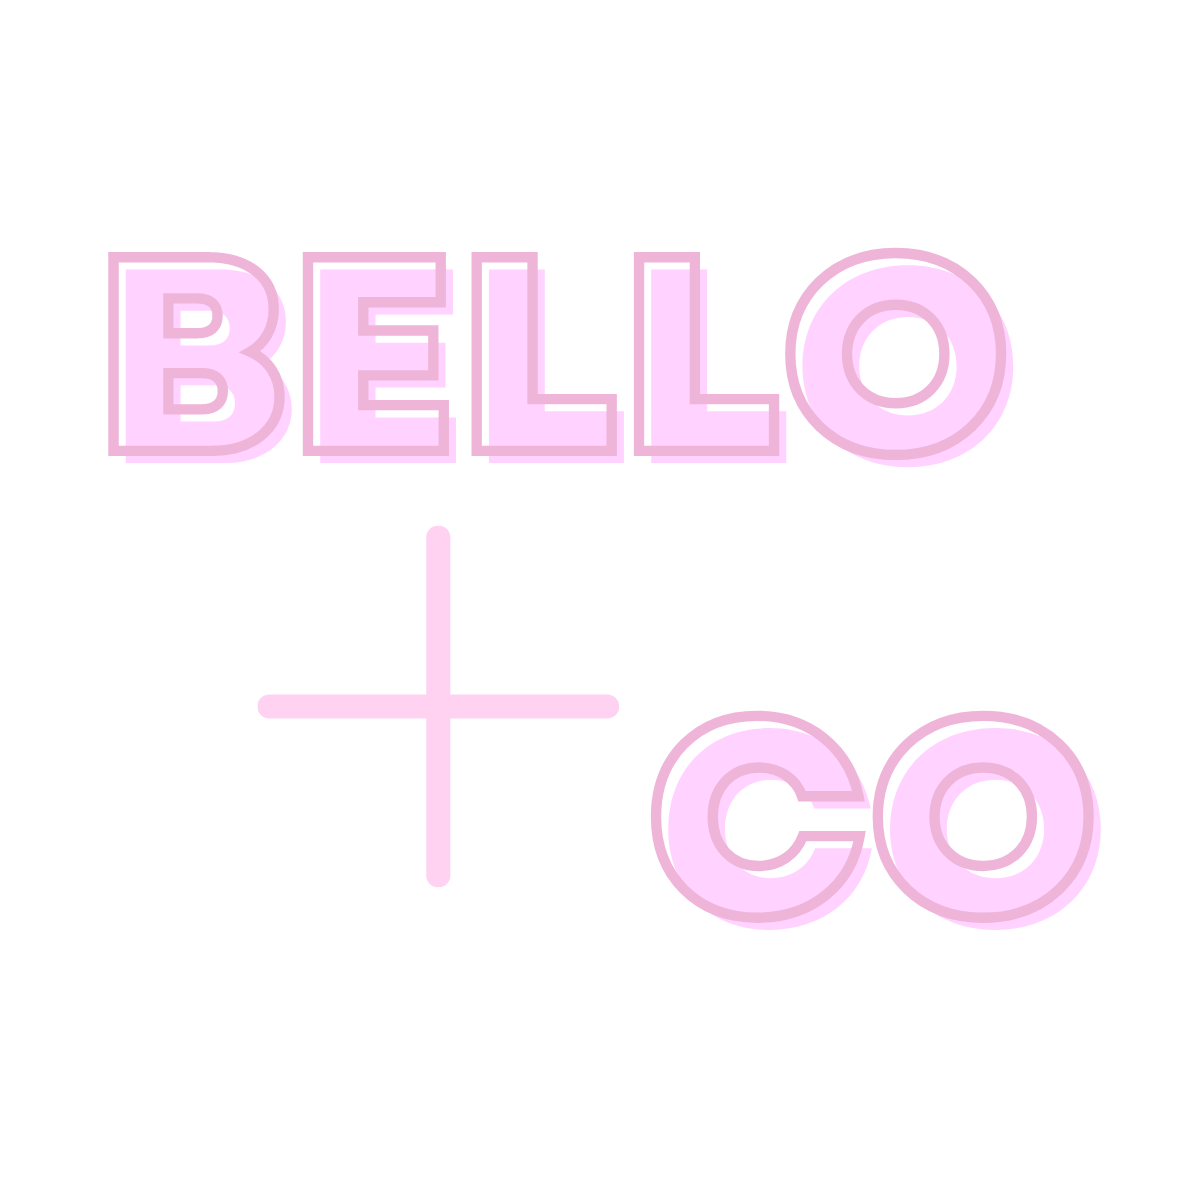 Bello + Co Boutique